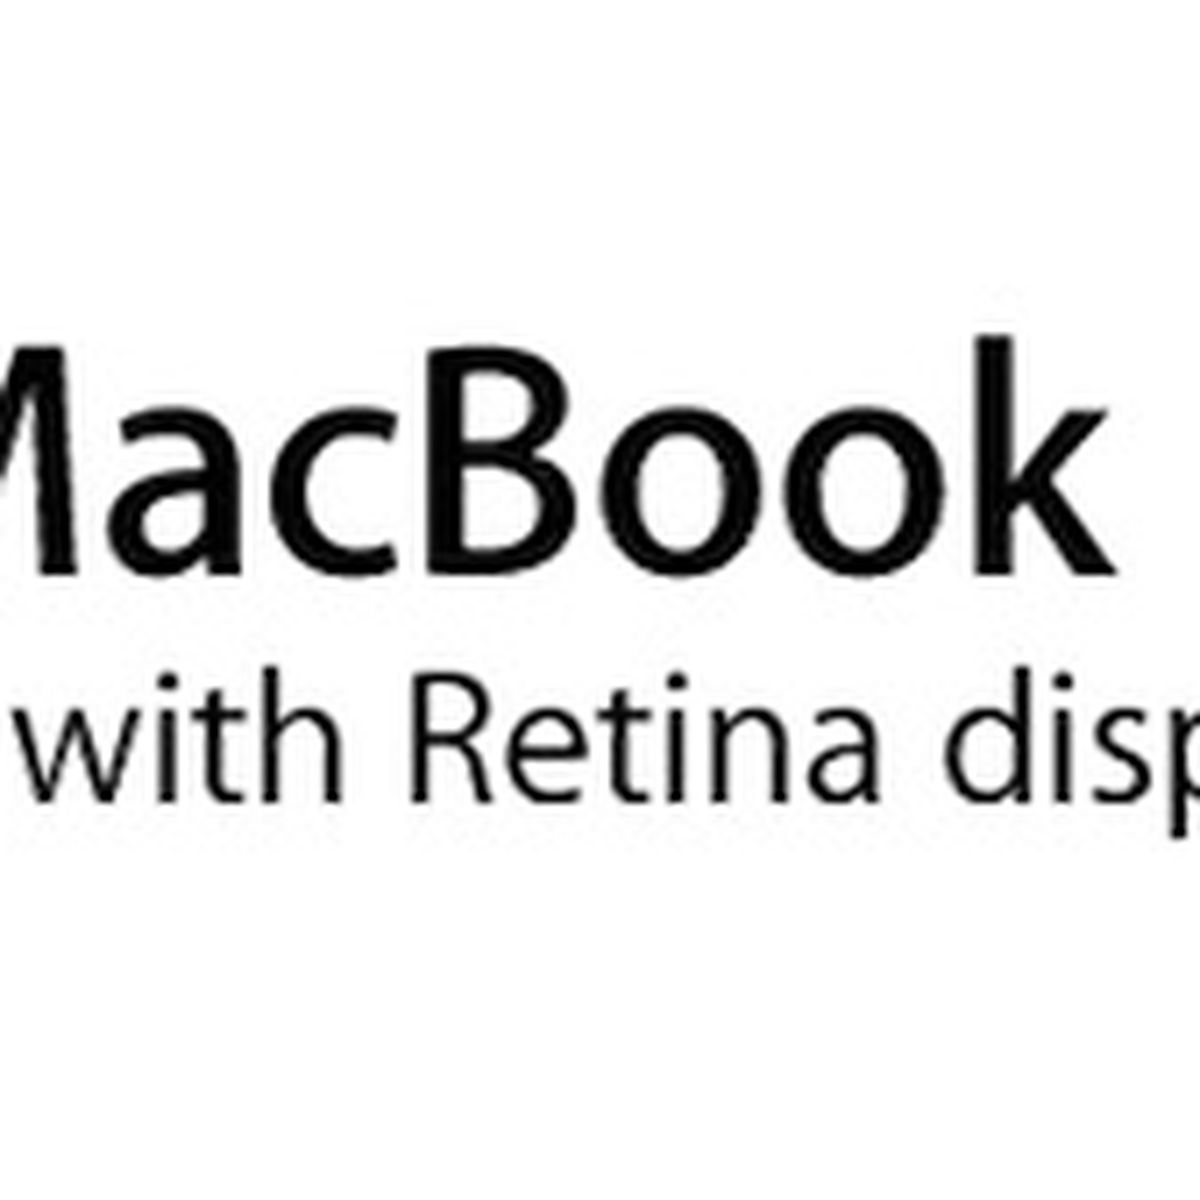 microsoft office for mac 2011 retina update